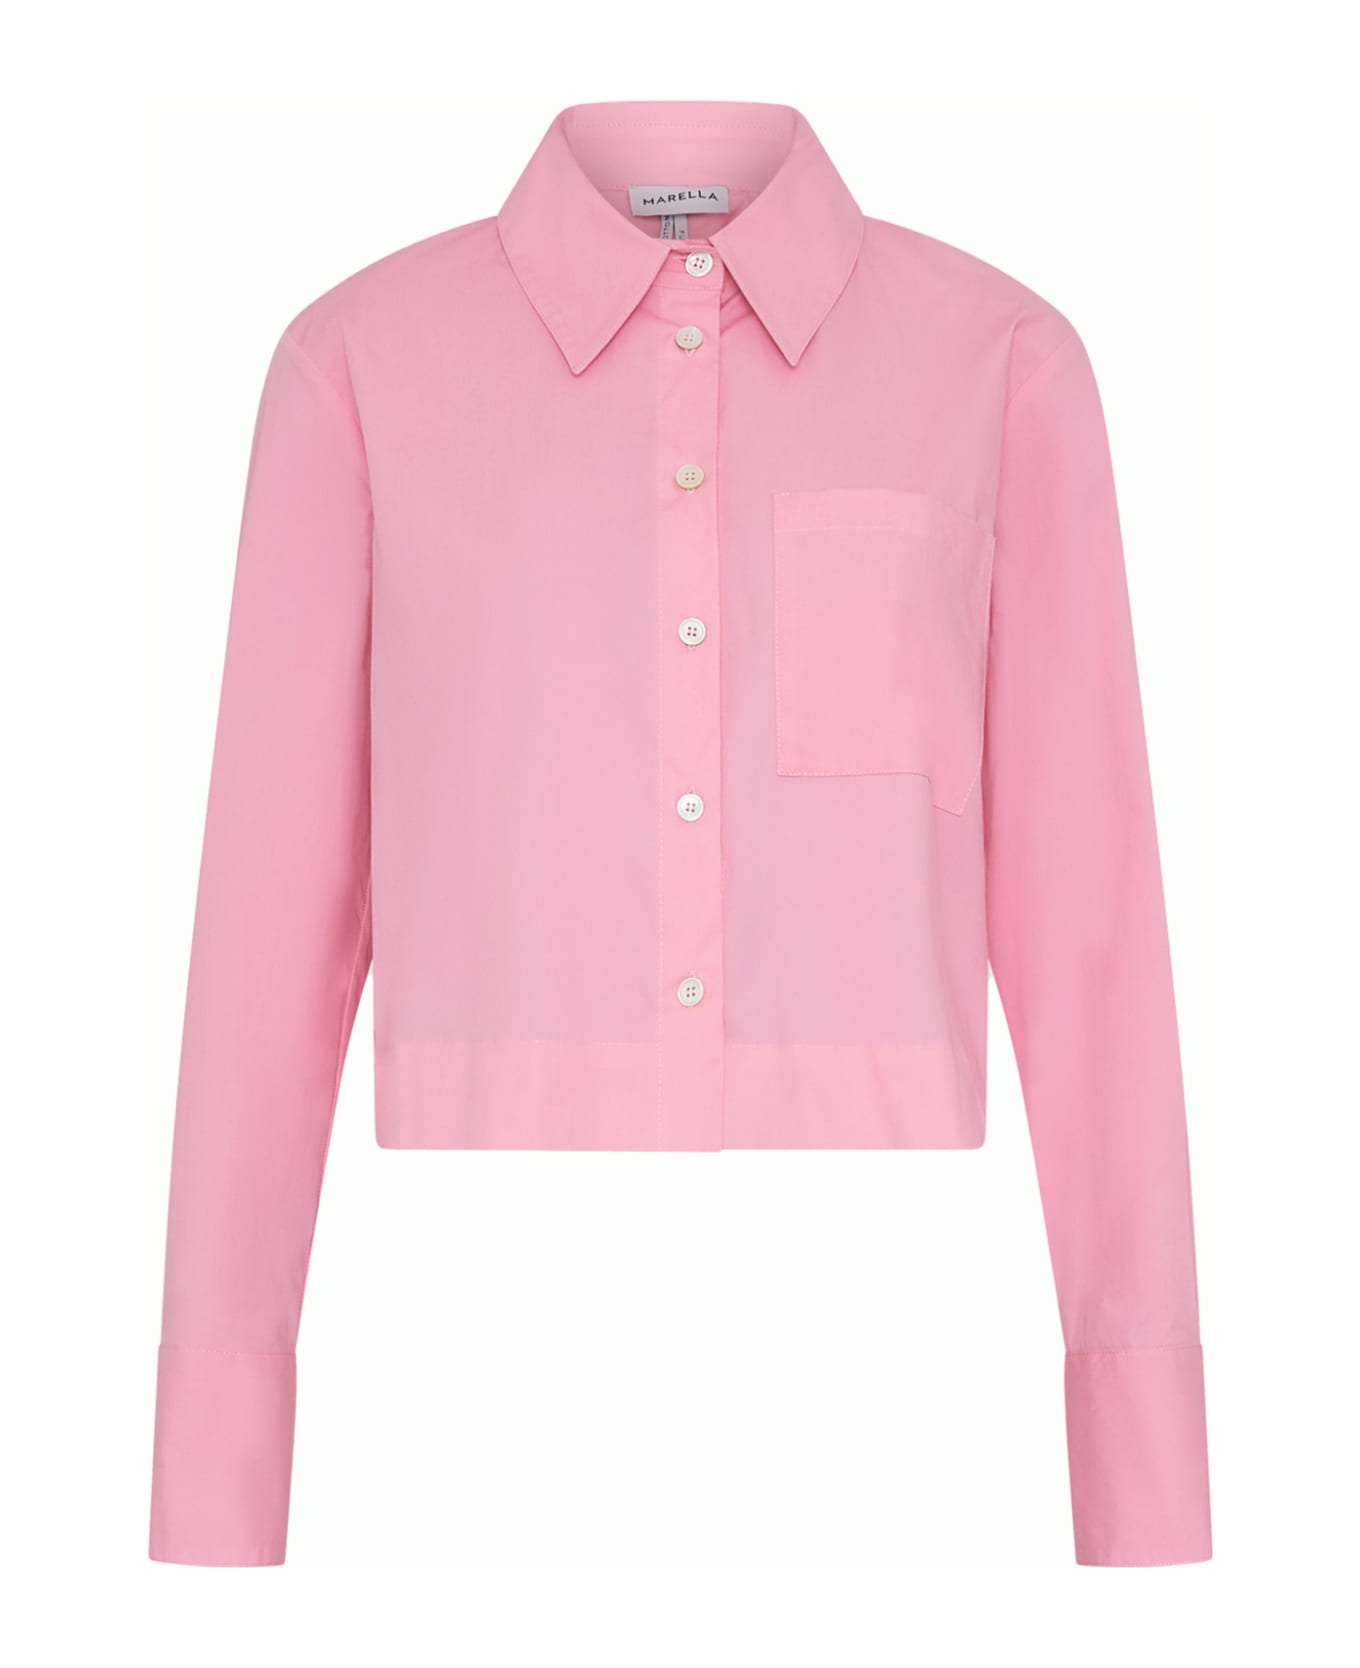 Marella Pink Long-sleeved Shirt - ROSA INTENSO シャツ